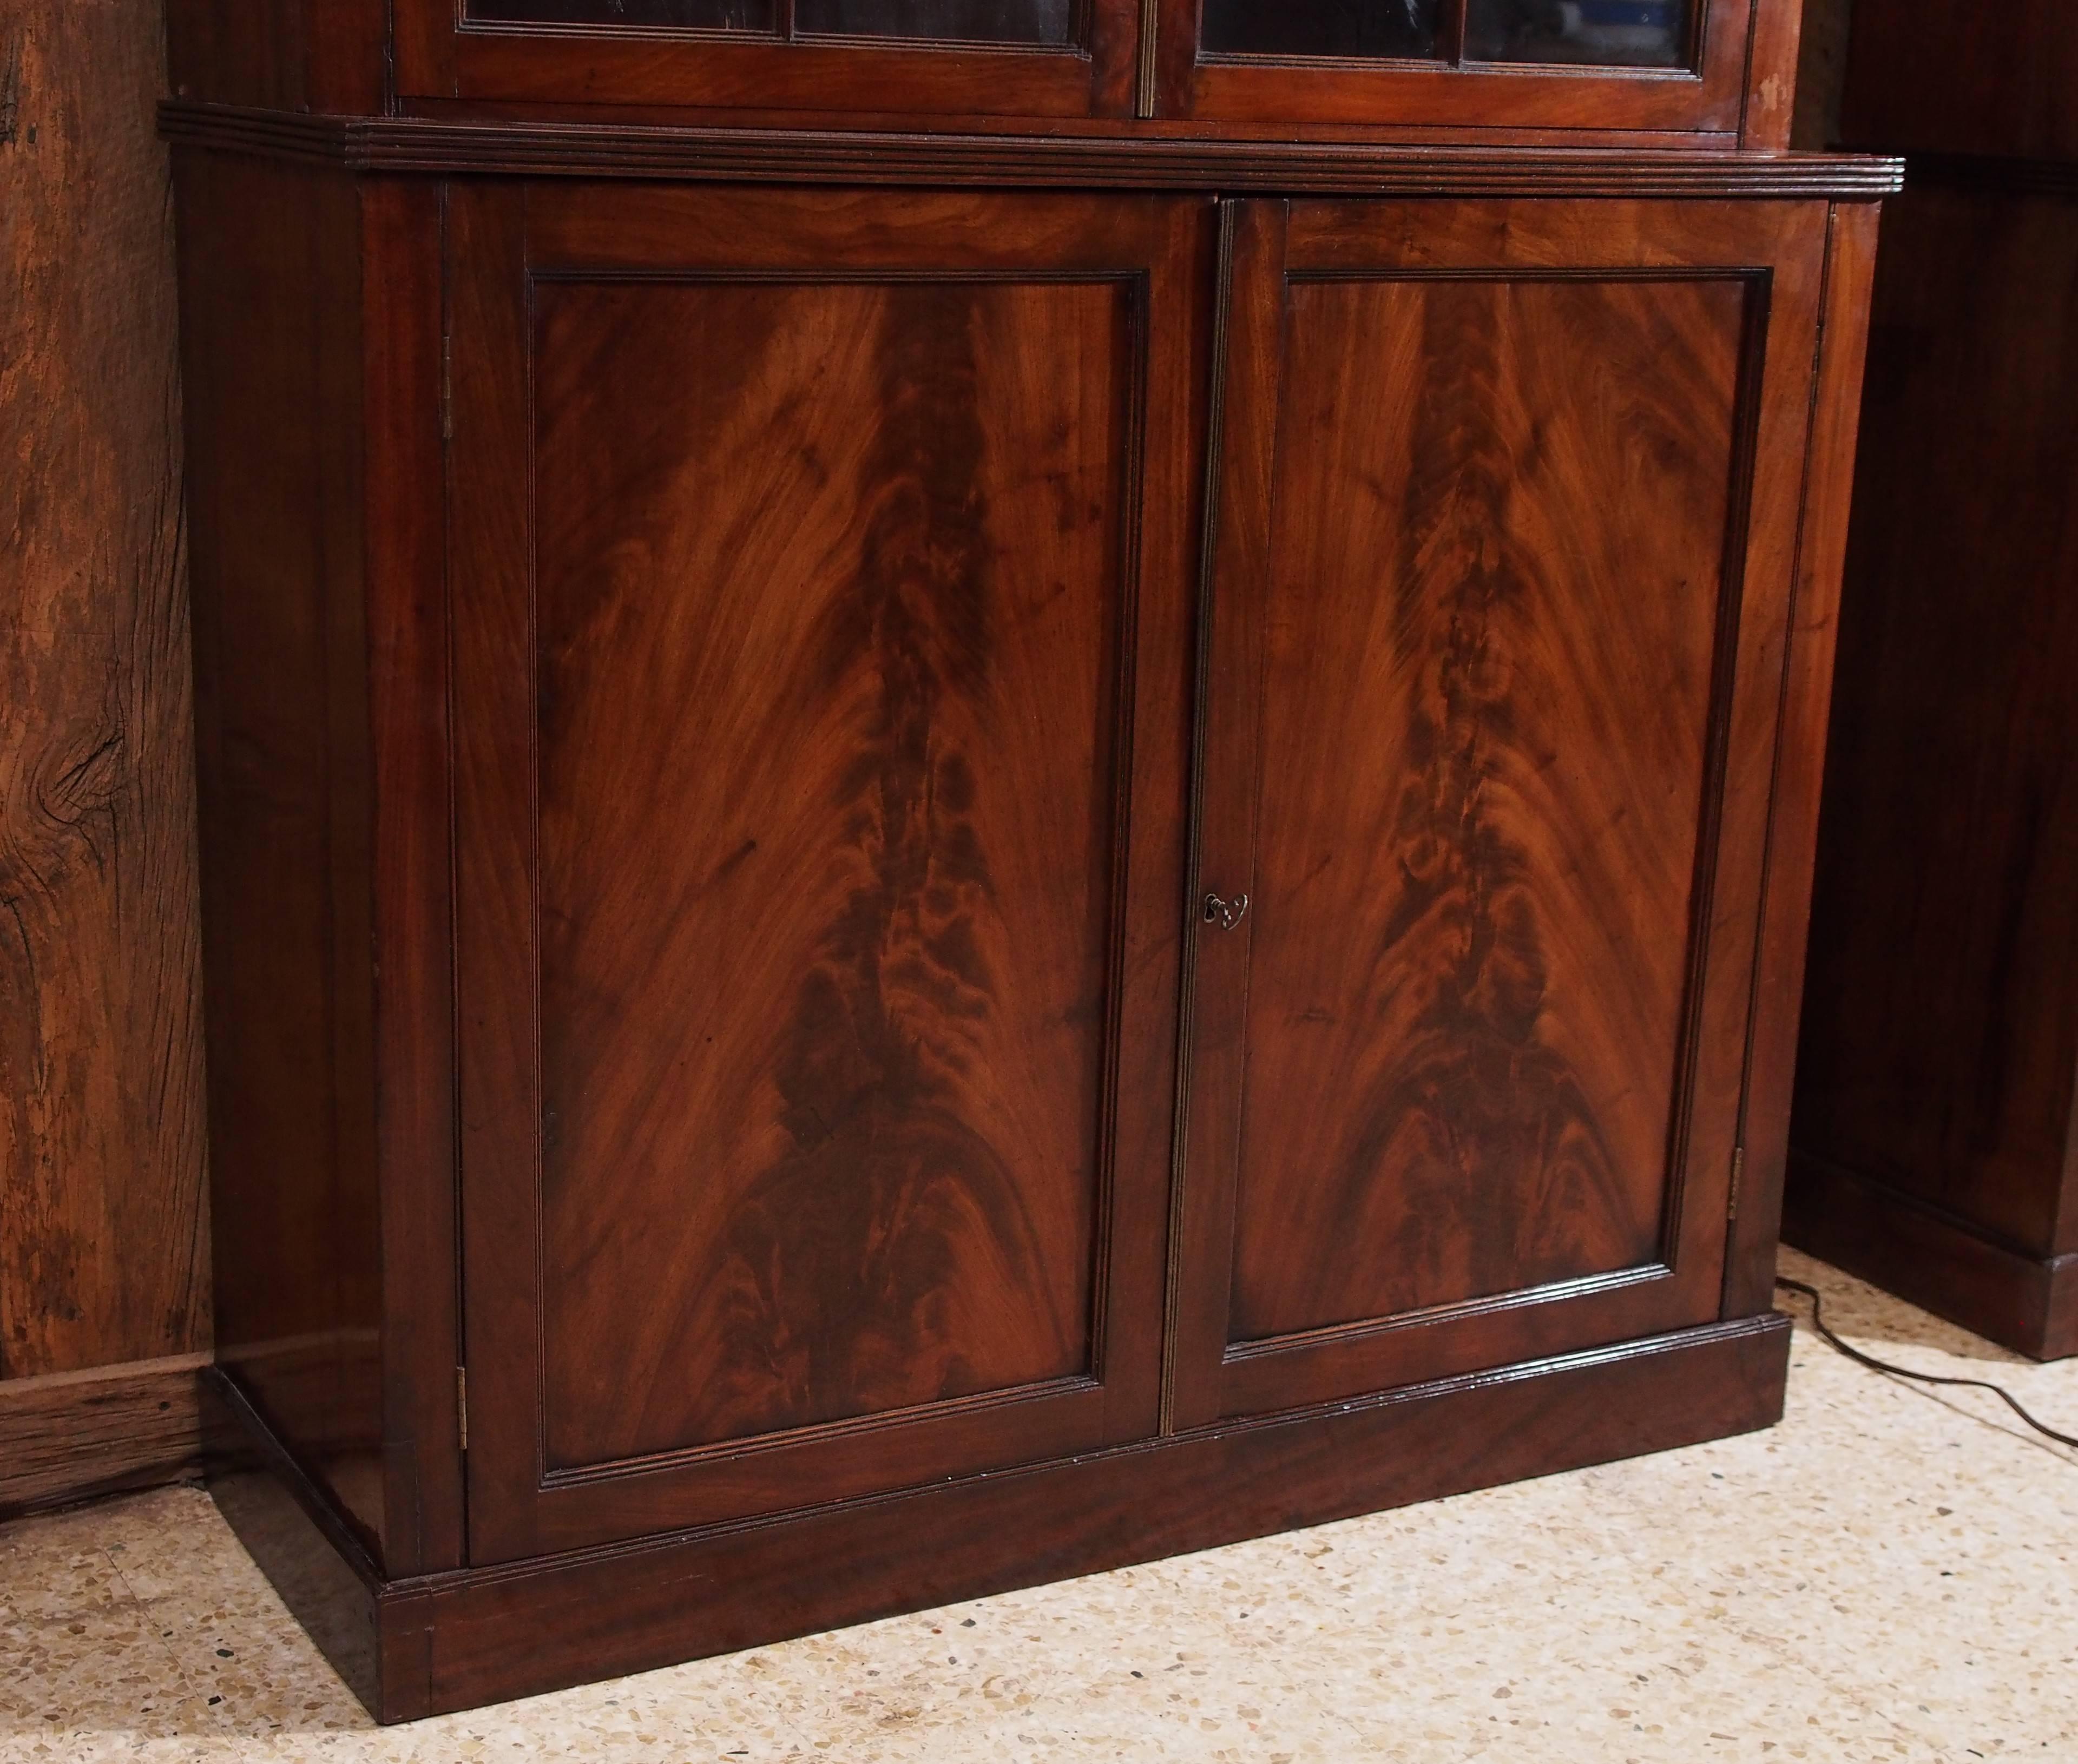 La beauté du bois de coromandel de cette armoire est exceptionnelle.